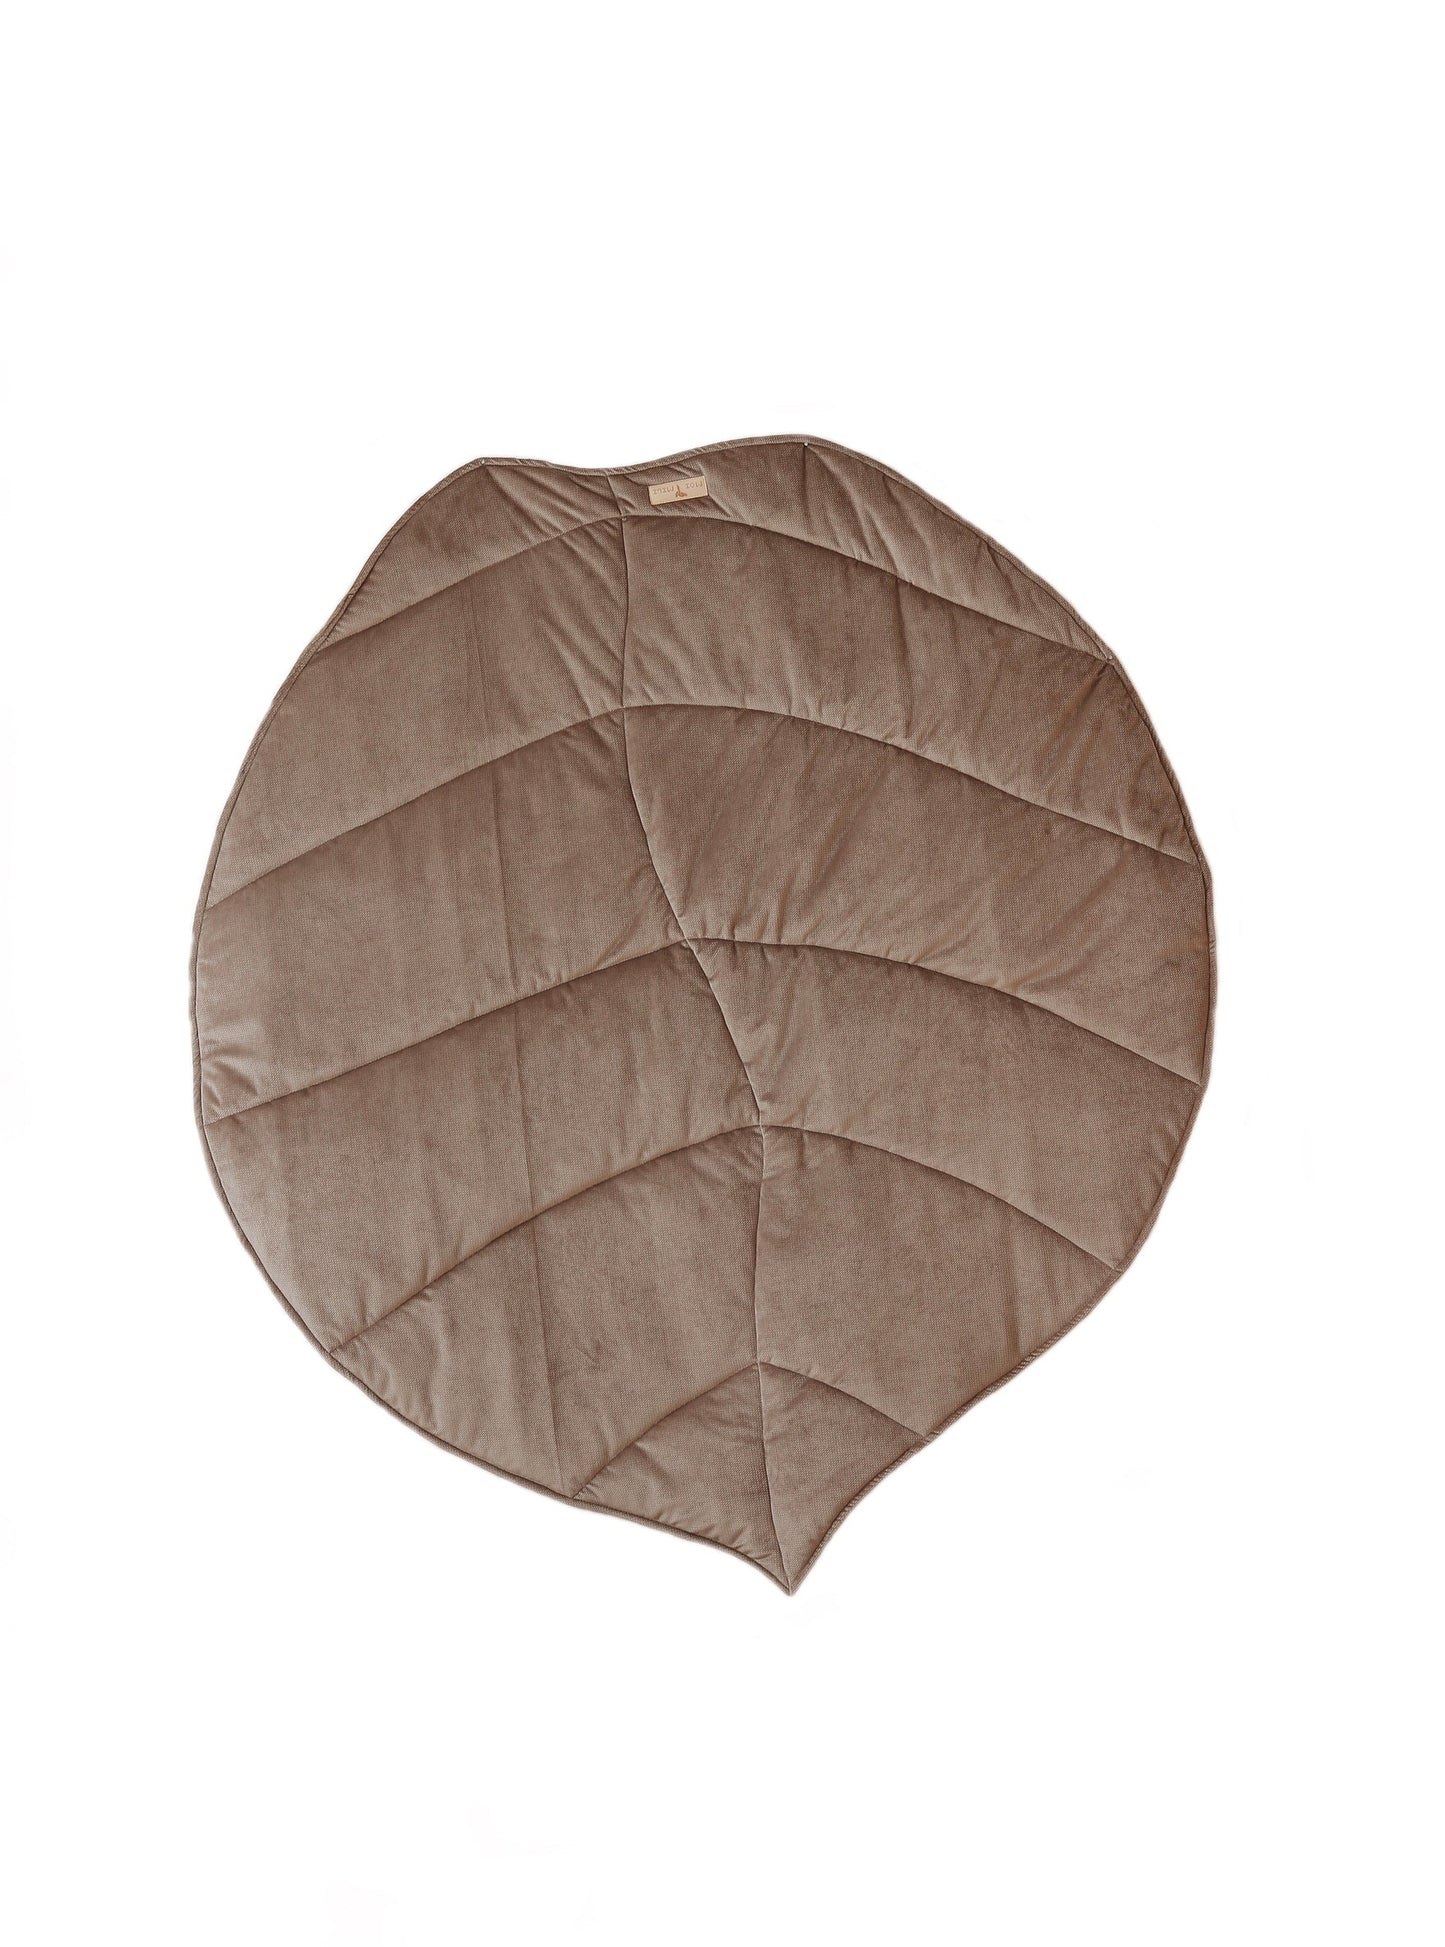 Velvet “Dark Beige” Leaf Mat